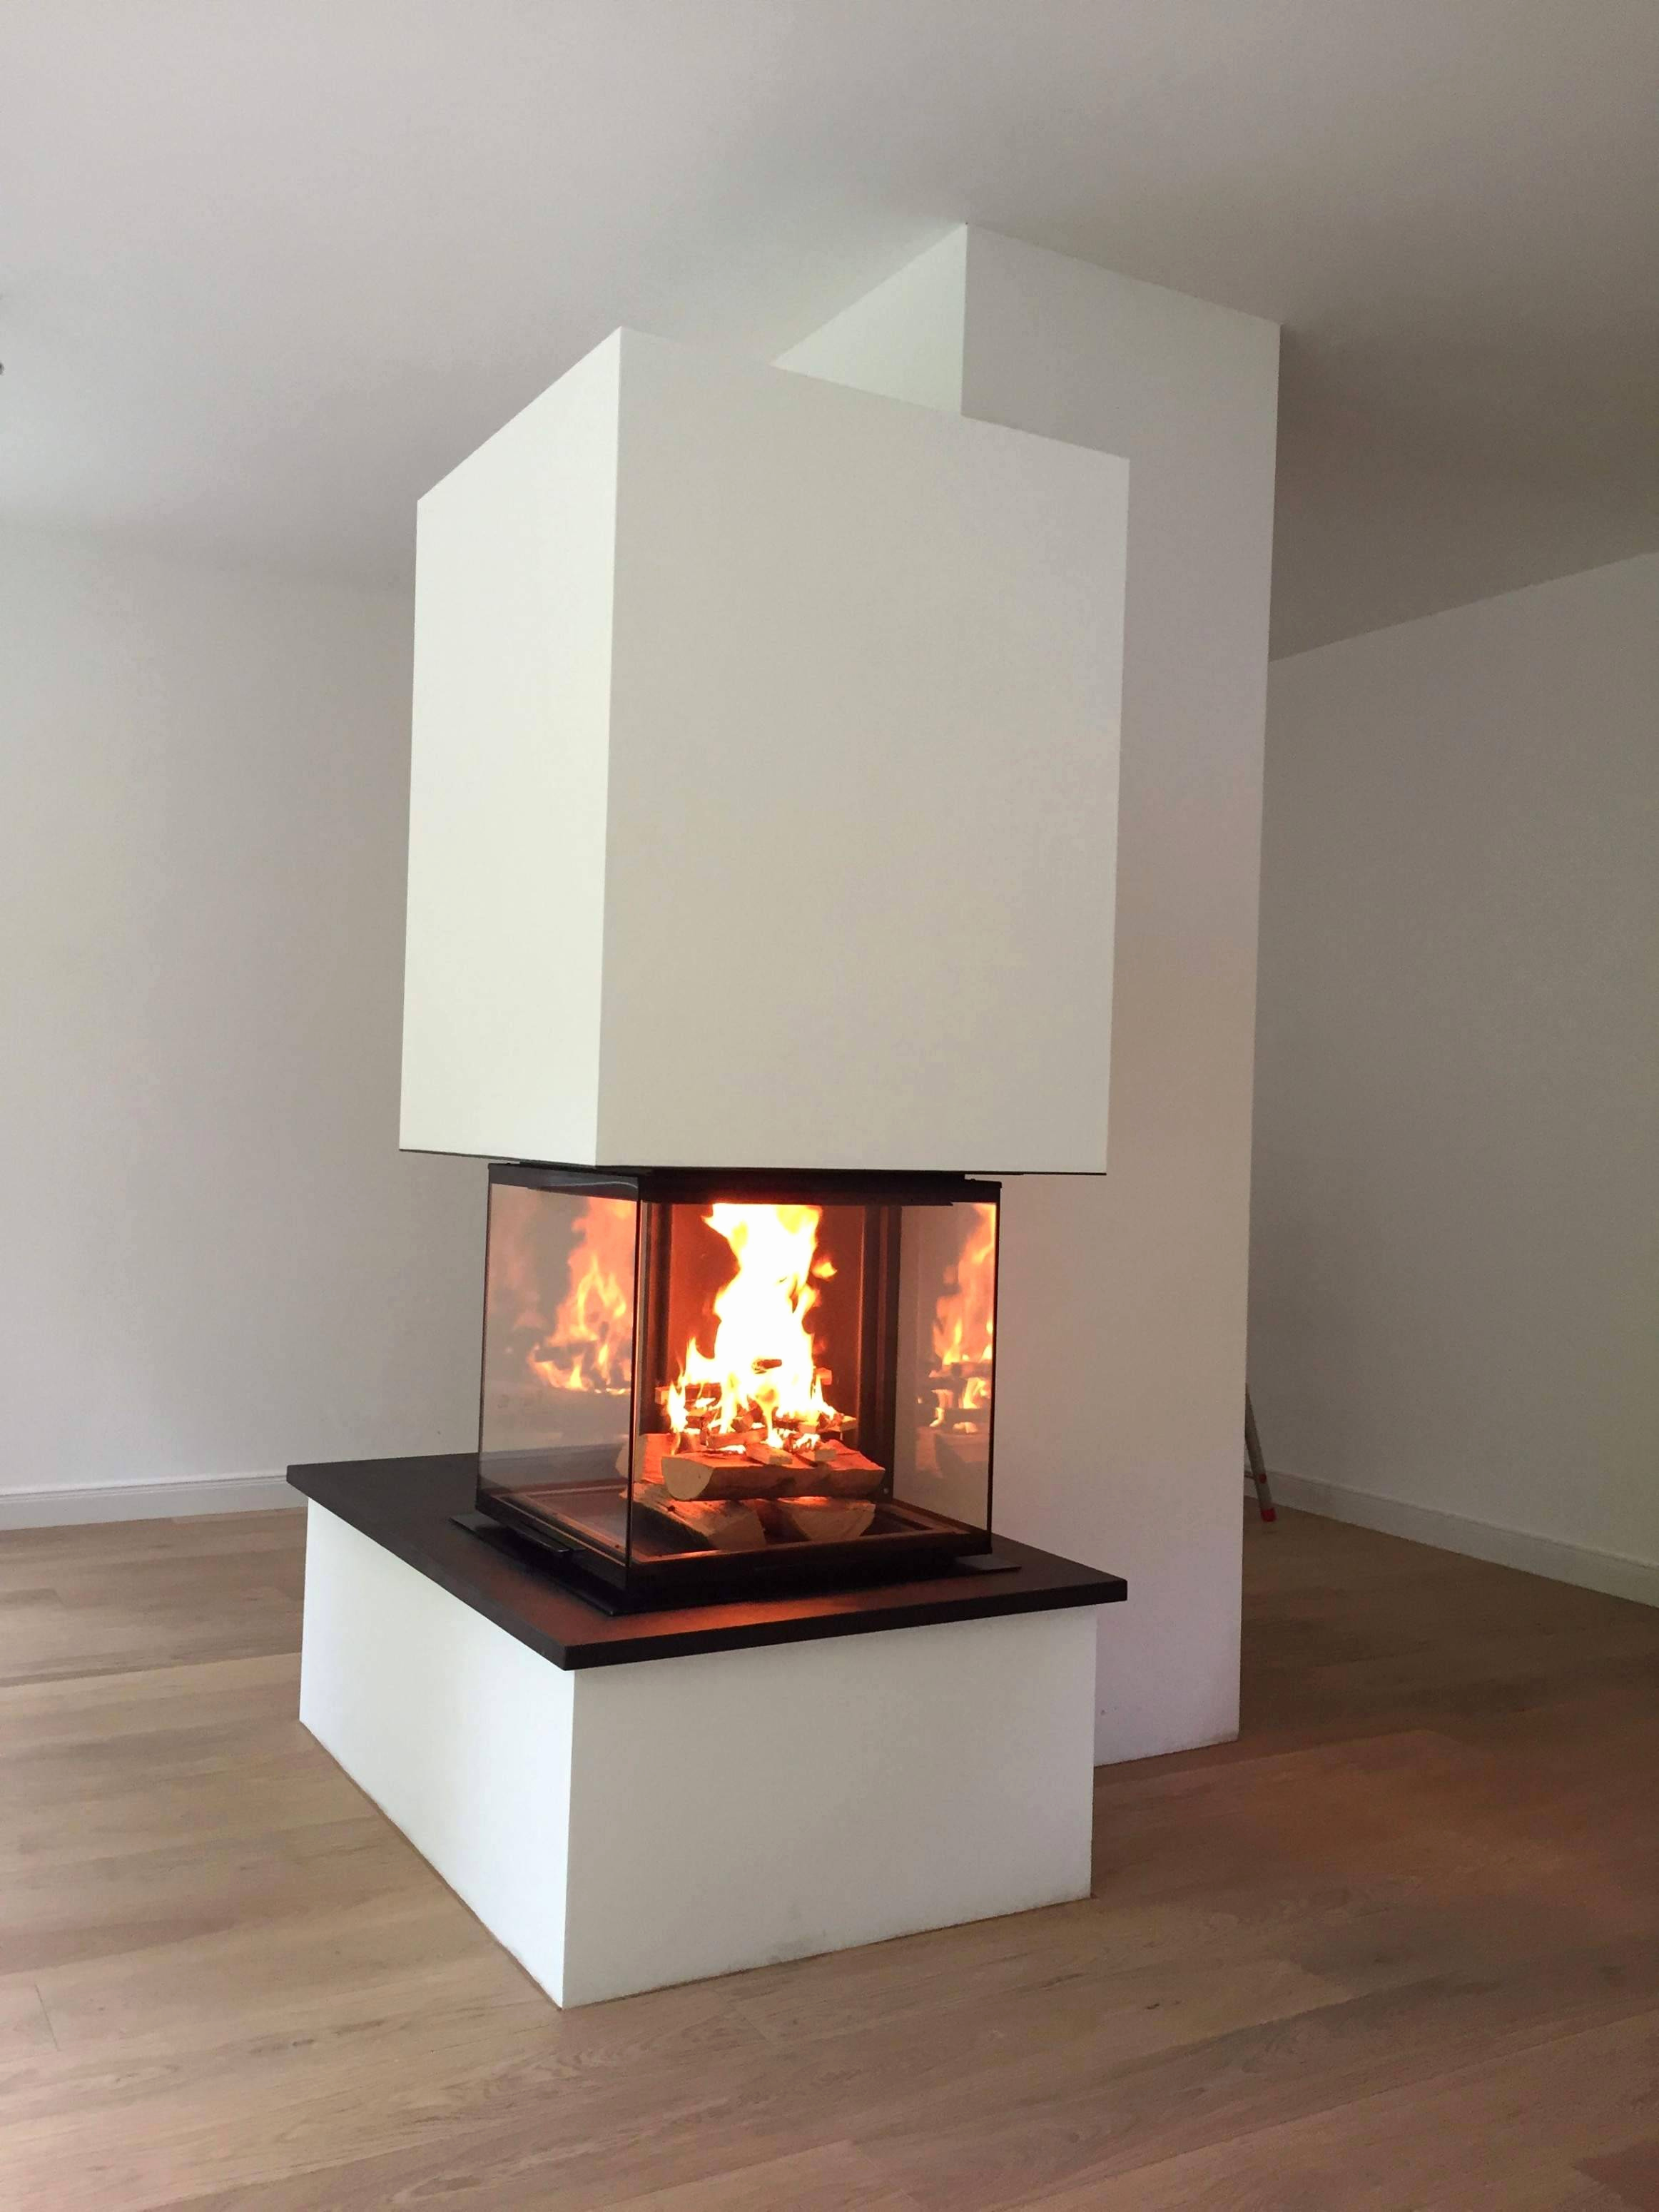 Fireplace Hearth Materials New Speicherkaminofen Das Beste Von Kaminofen Mit Speicher